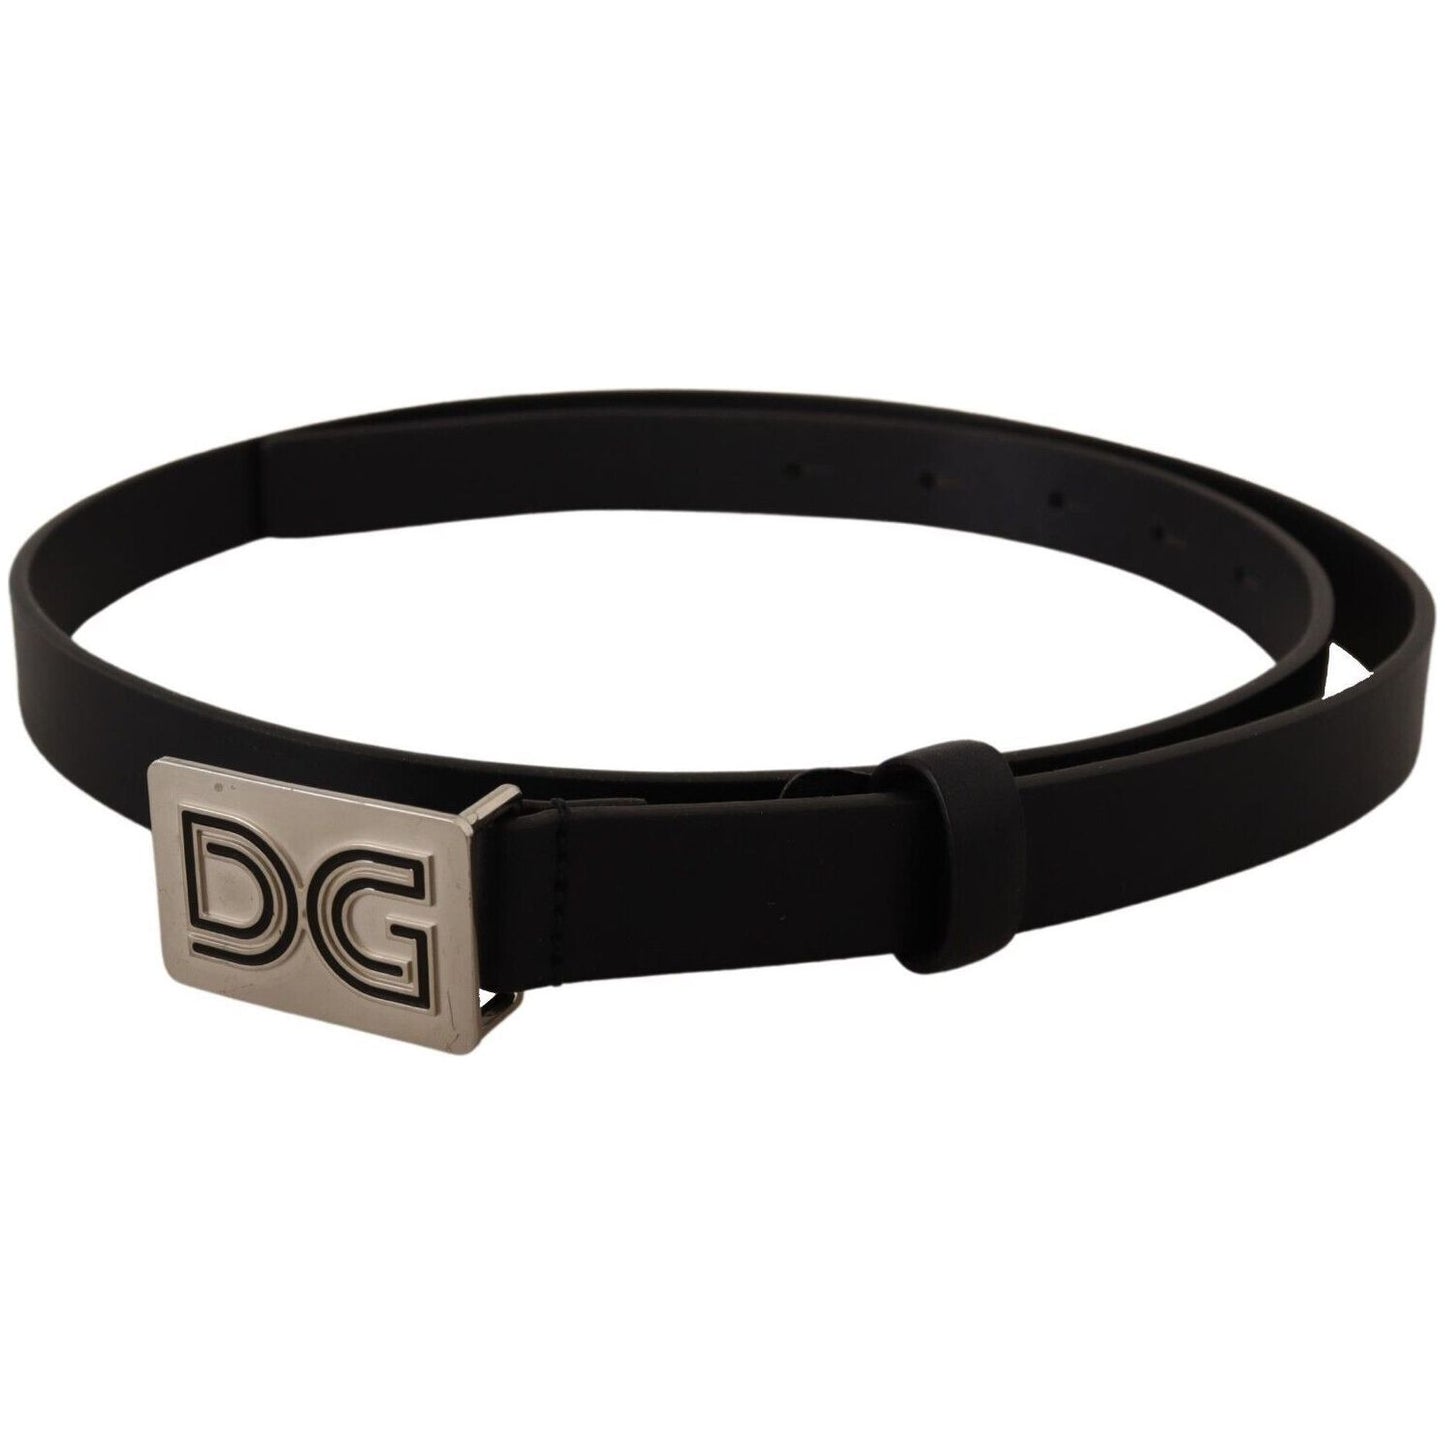 Dolce & Gabbana Elegant Black Leather Belt with Silver Buckle black-leather-silver-dg-logo-buckle-belt